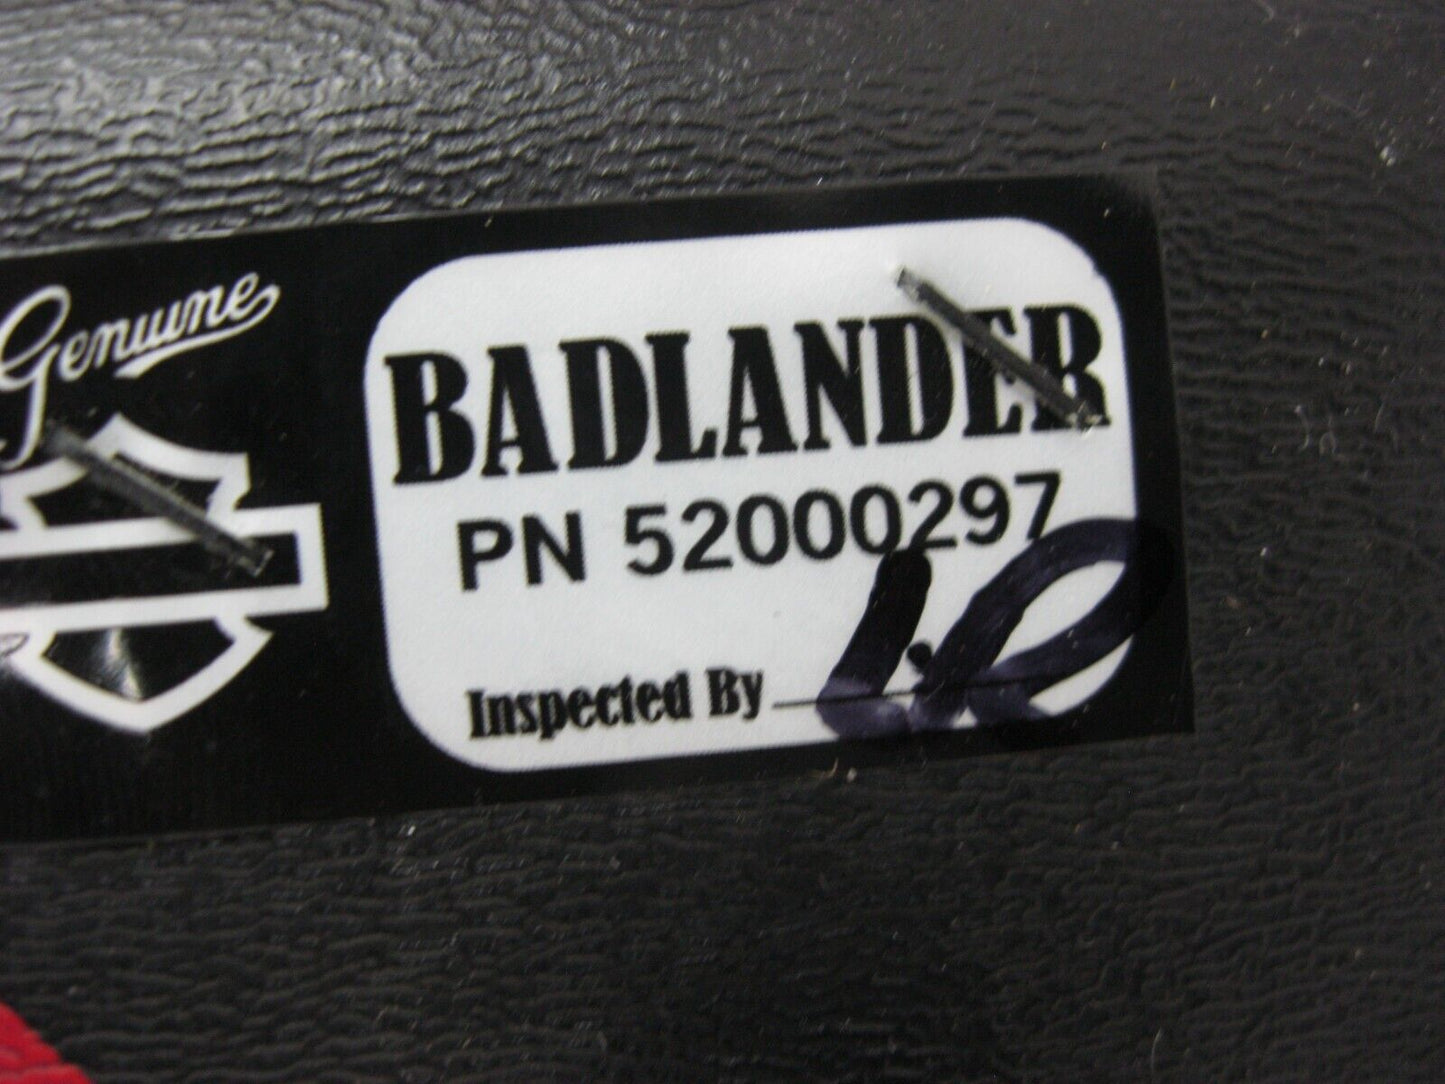 Harley-Davidson Badlander Two-Up Seat 52000297